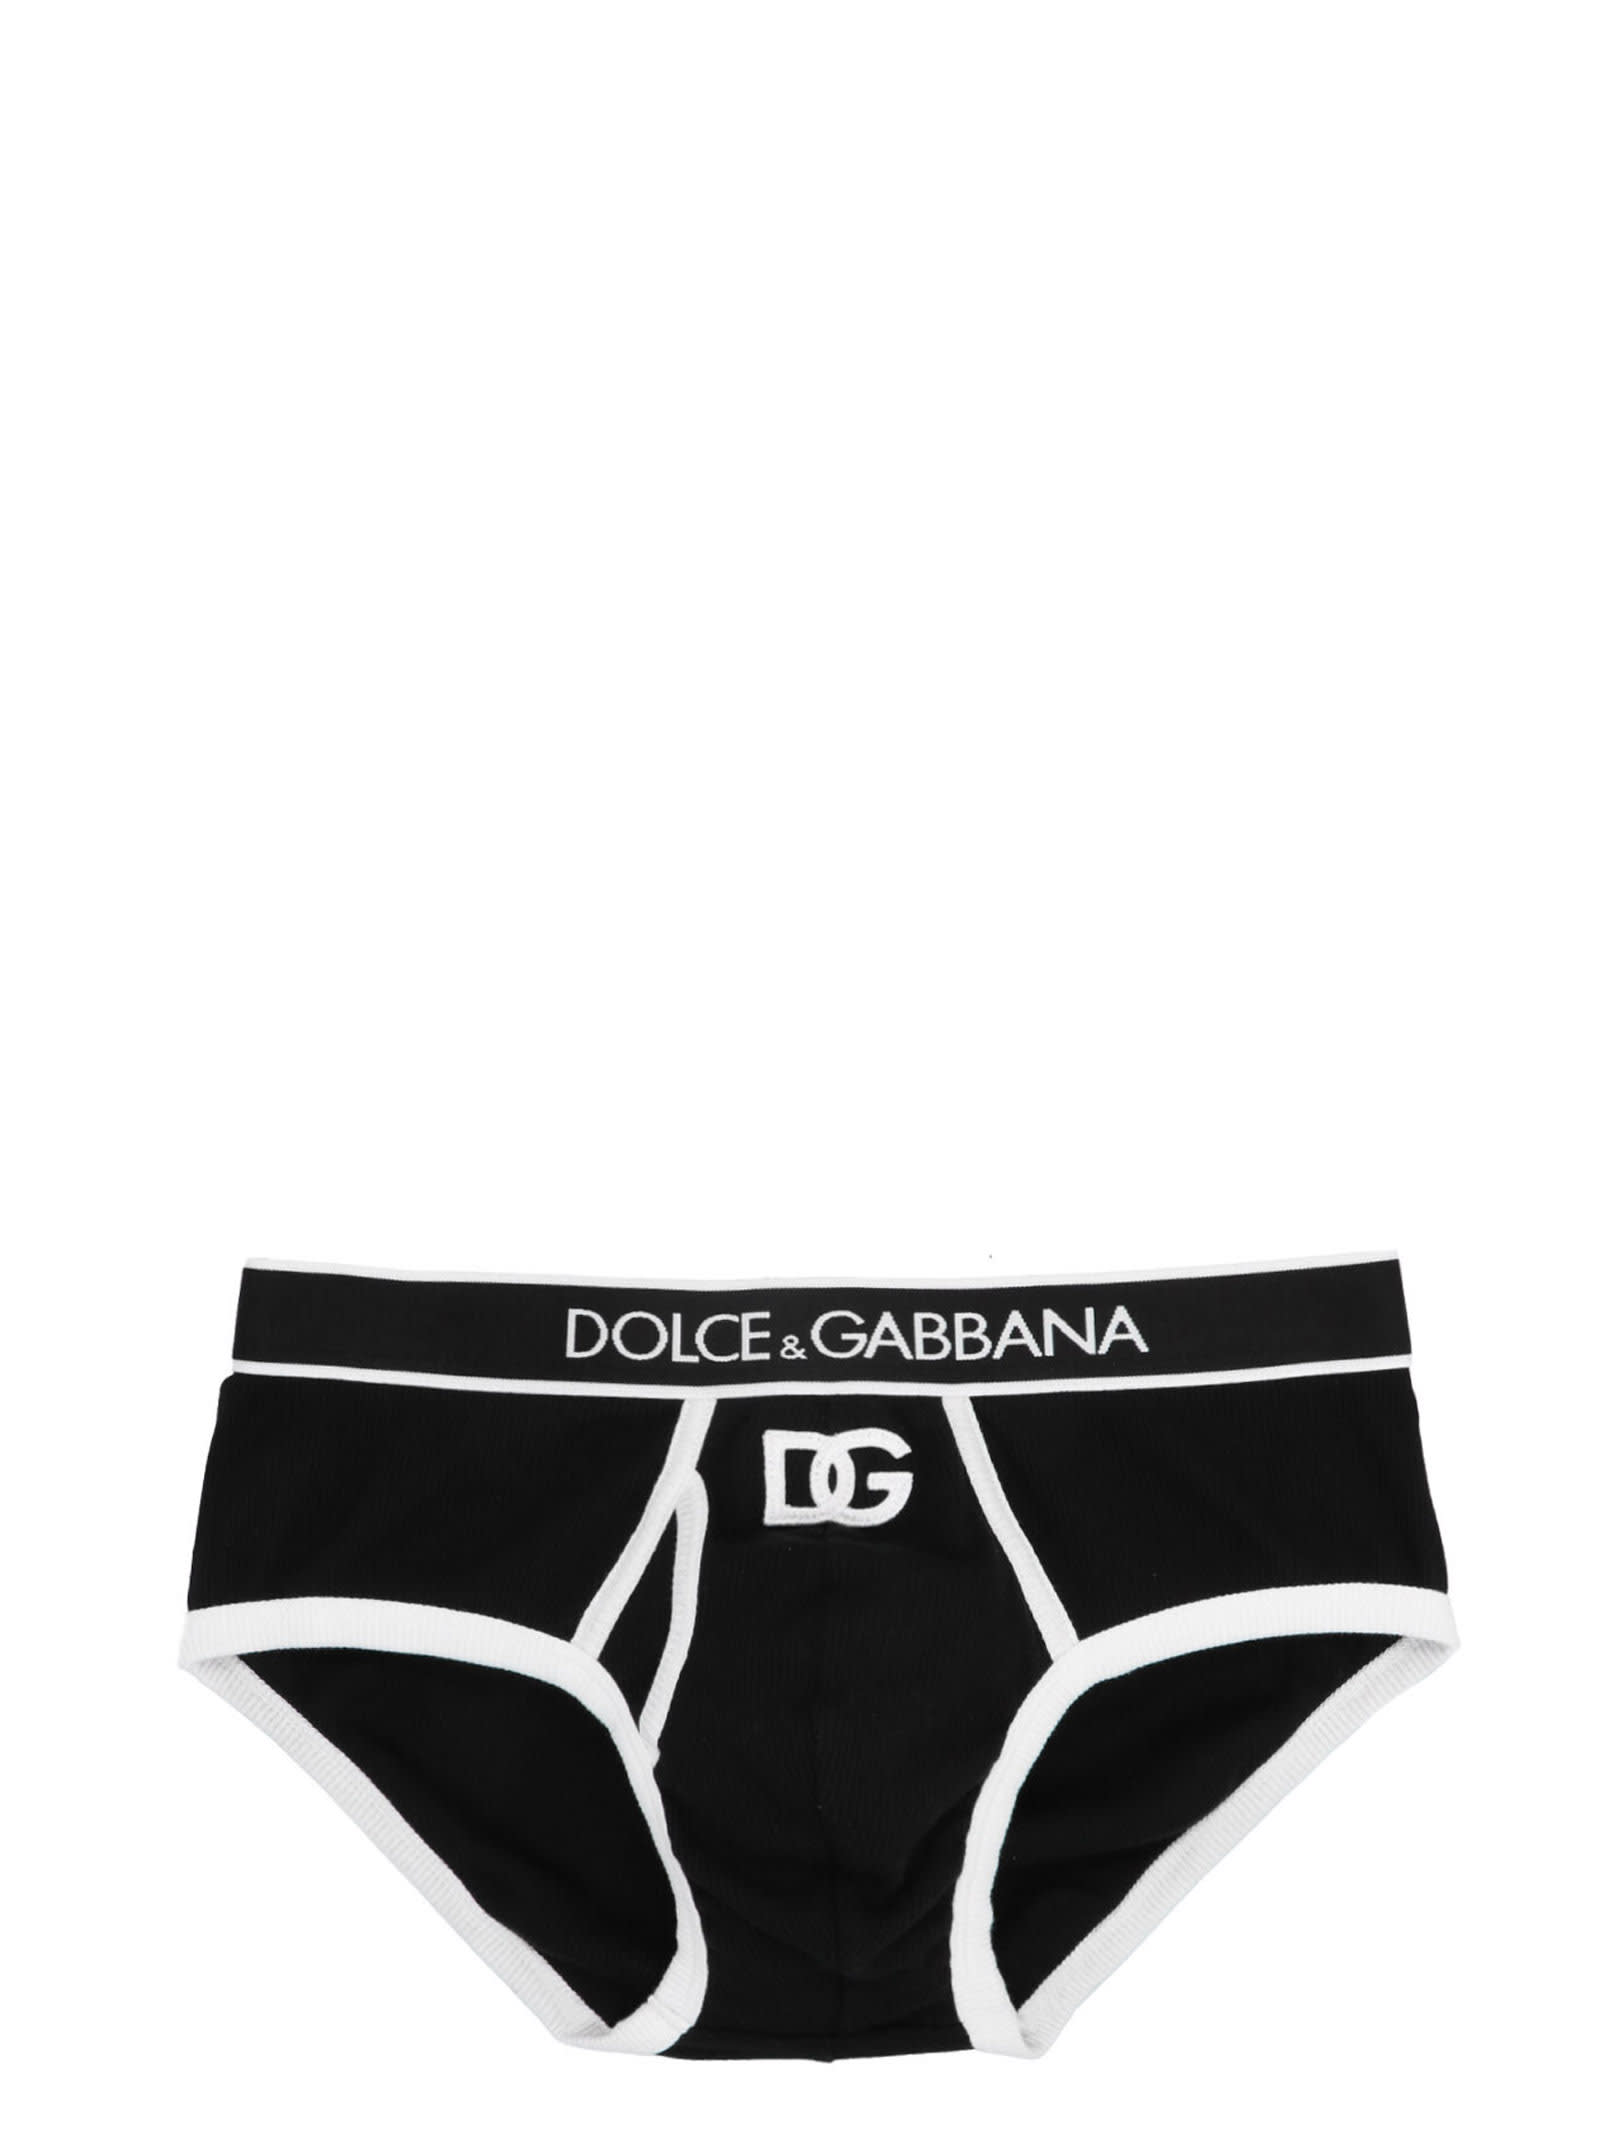 Dolce & Gabbana brando Briefs